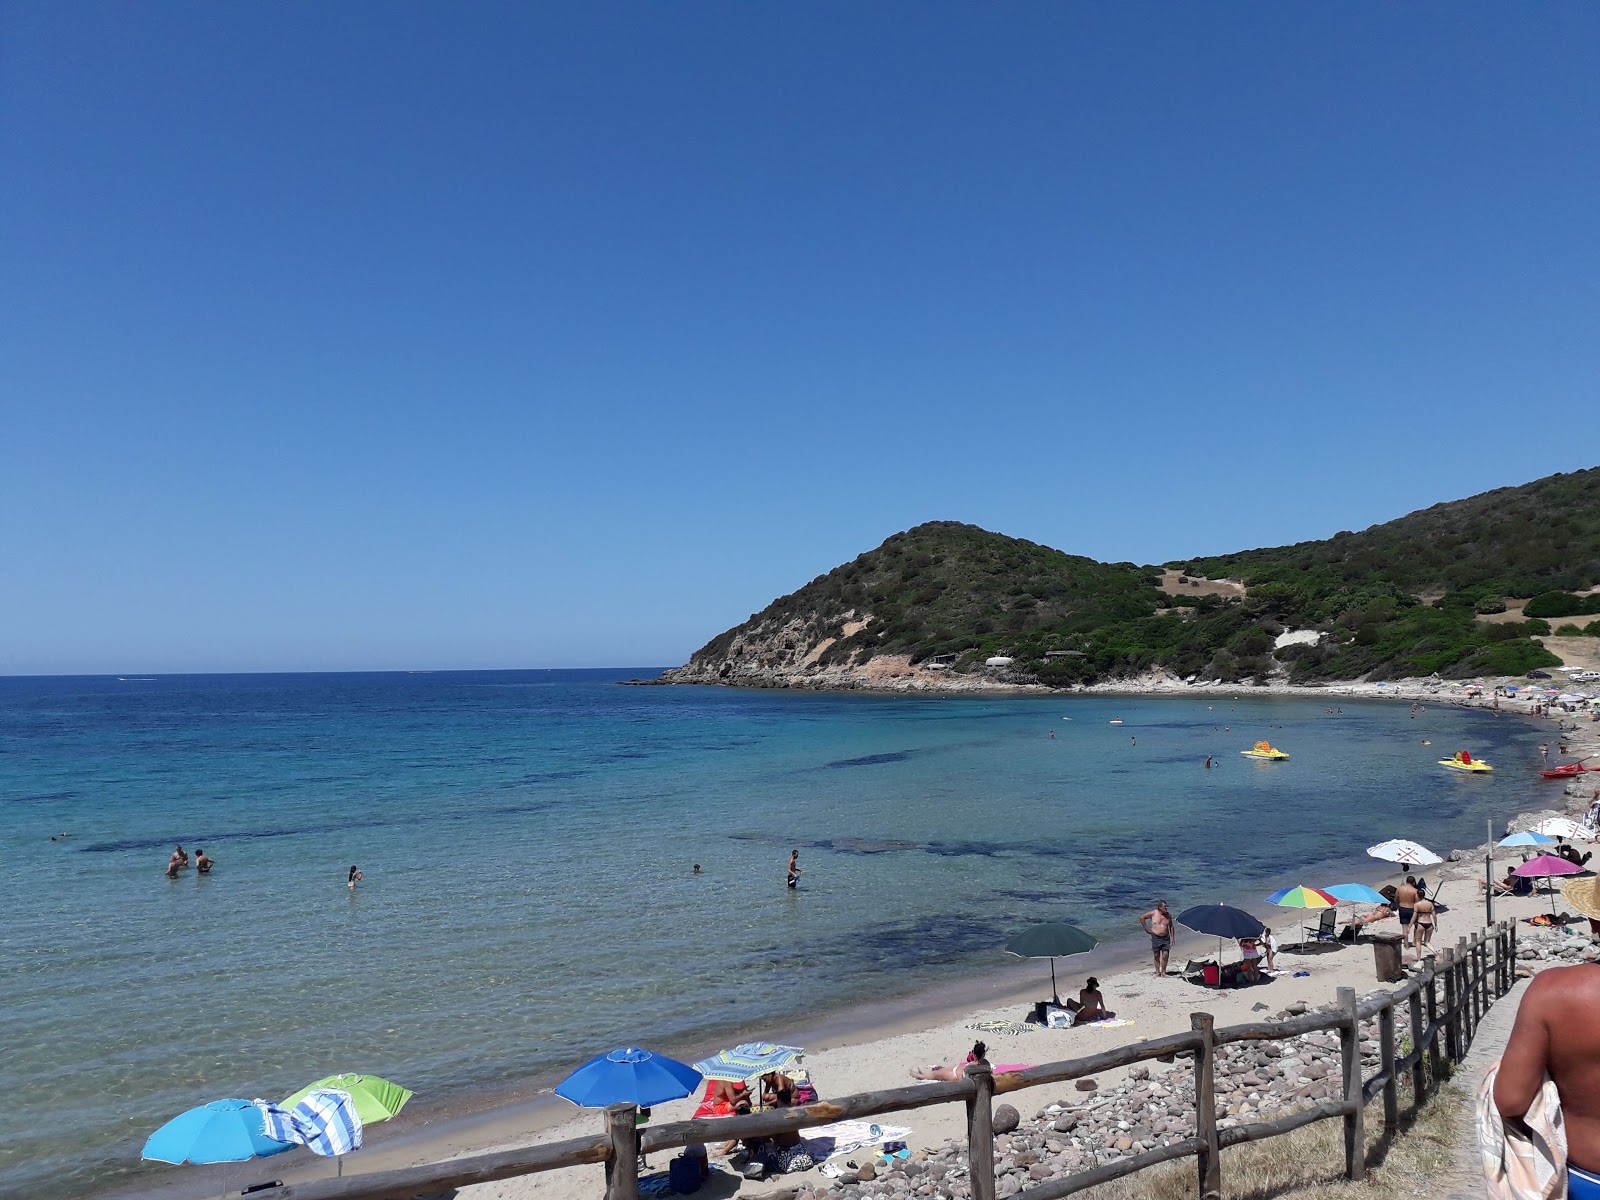 Zdjęcie Pogline beach - popularne miejsce wśród znawców relaksu